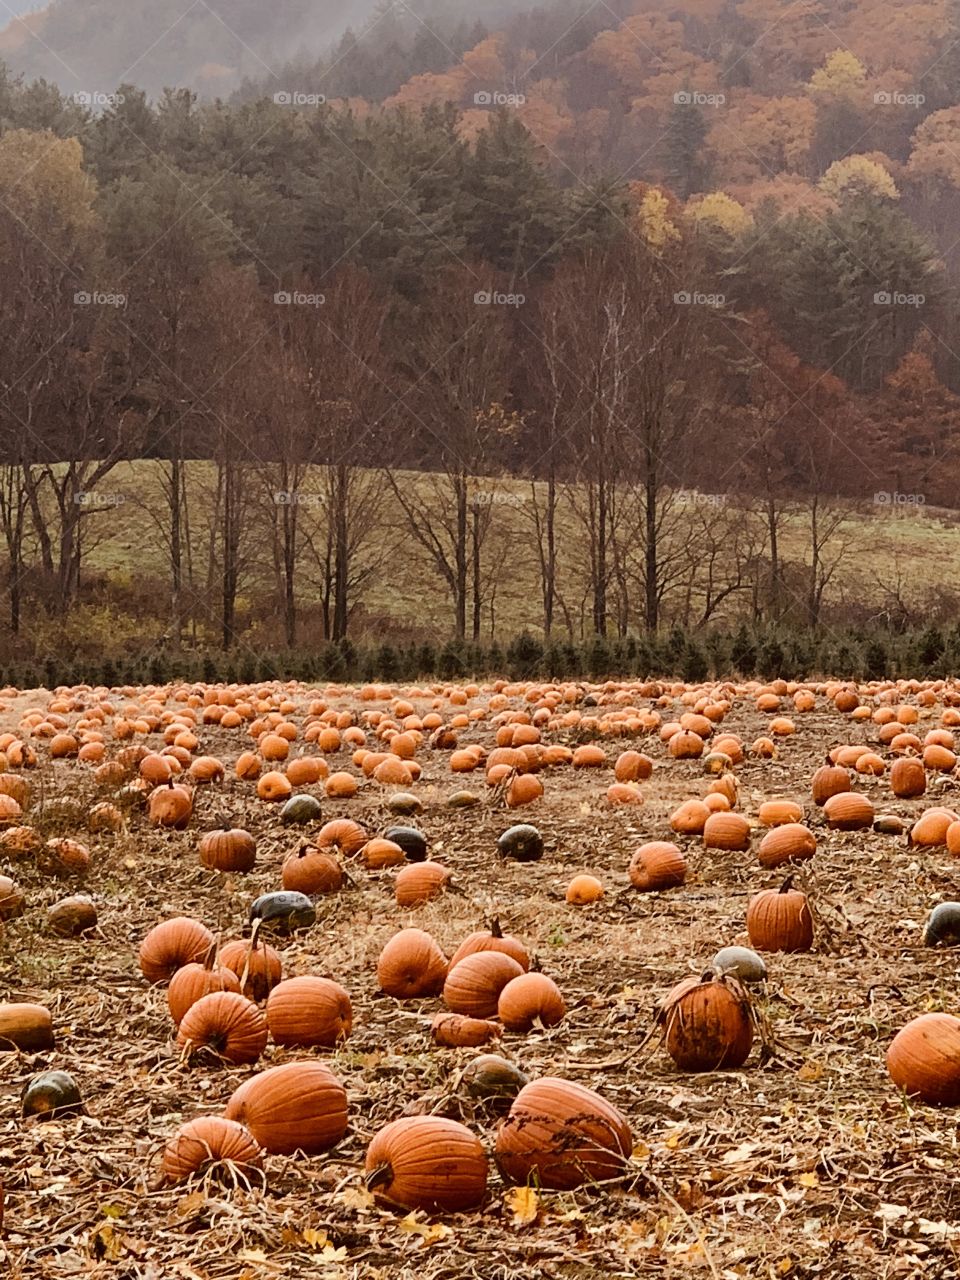 Field of pumpkin 